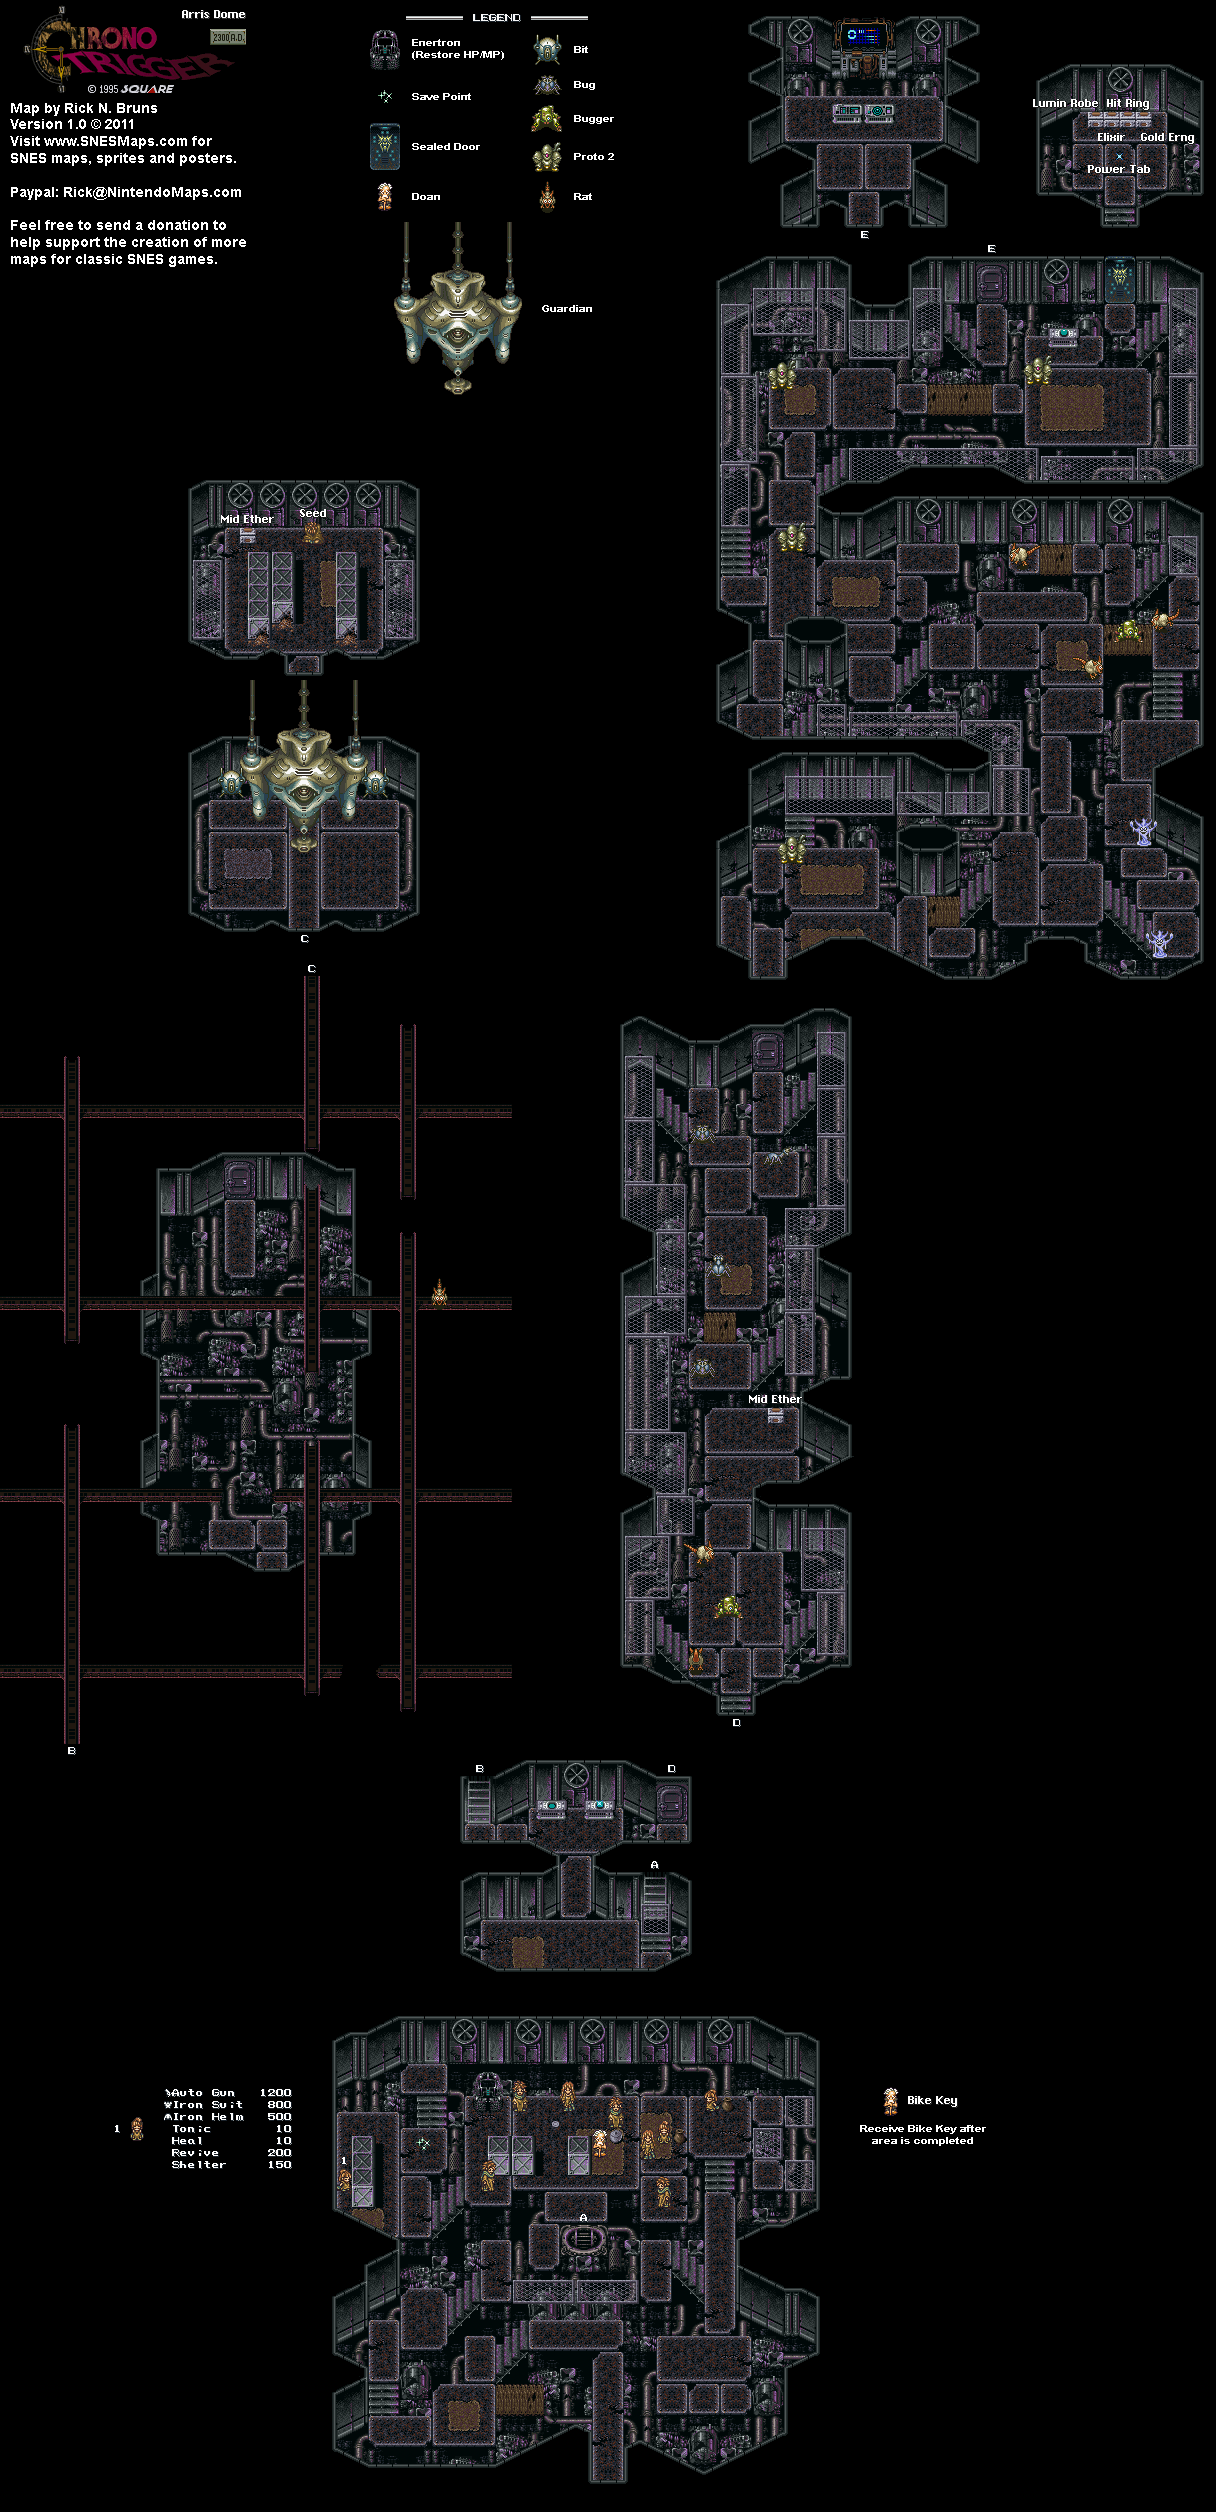 Chrono Trigger - Arris Dome (2300 AD) Super Nintendo SNES Map